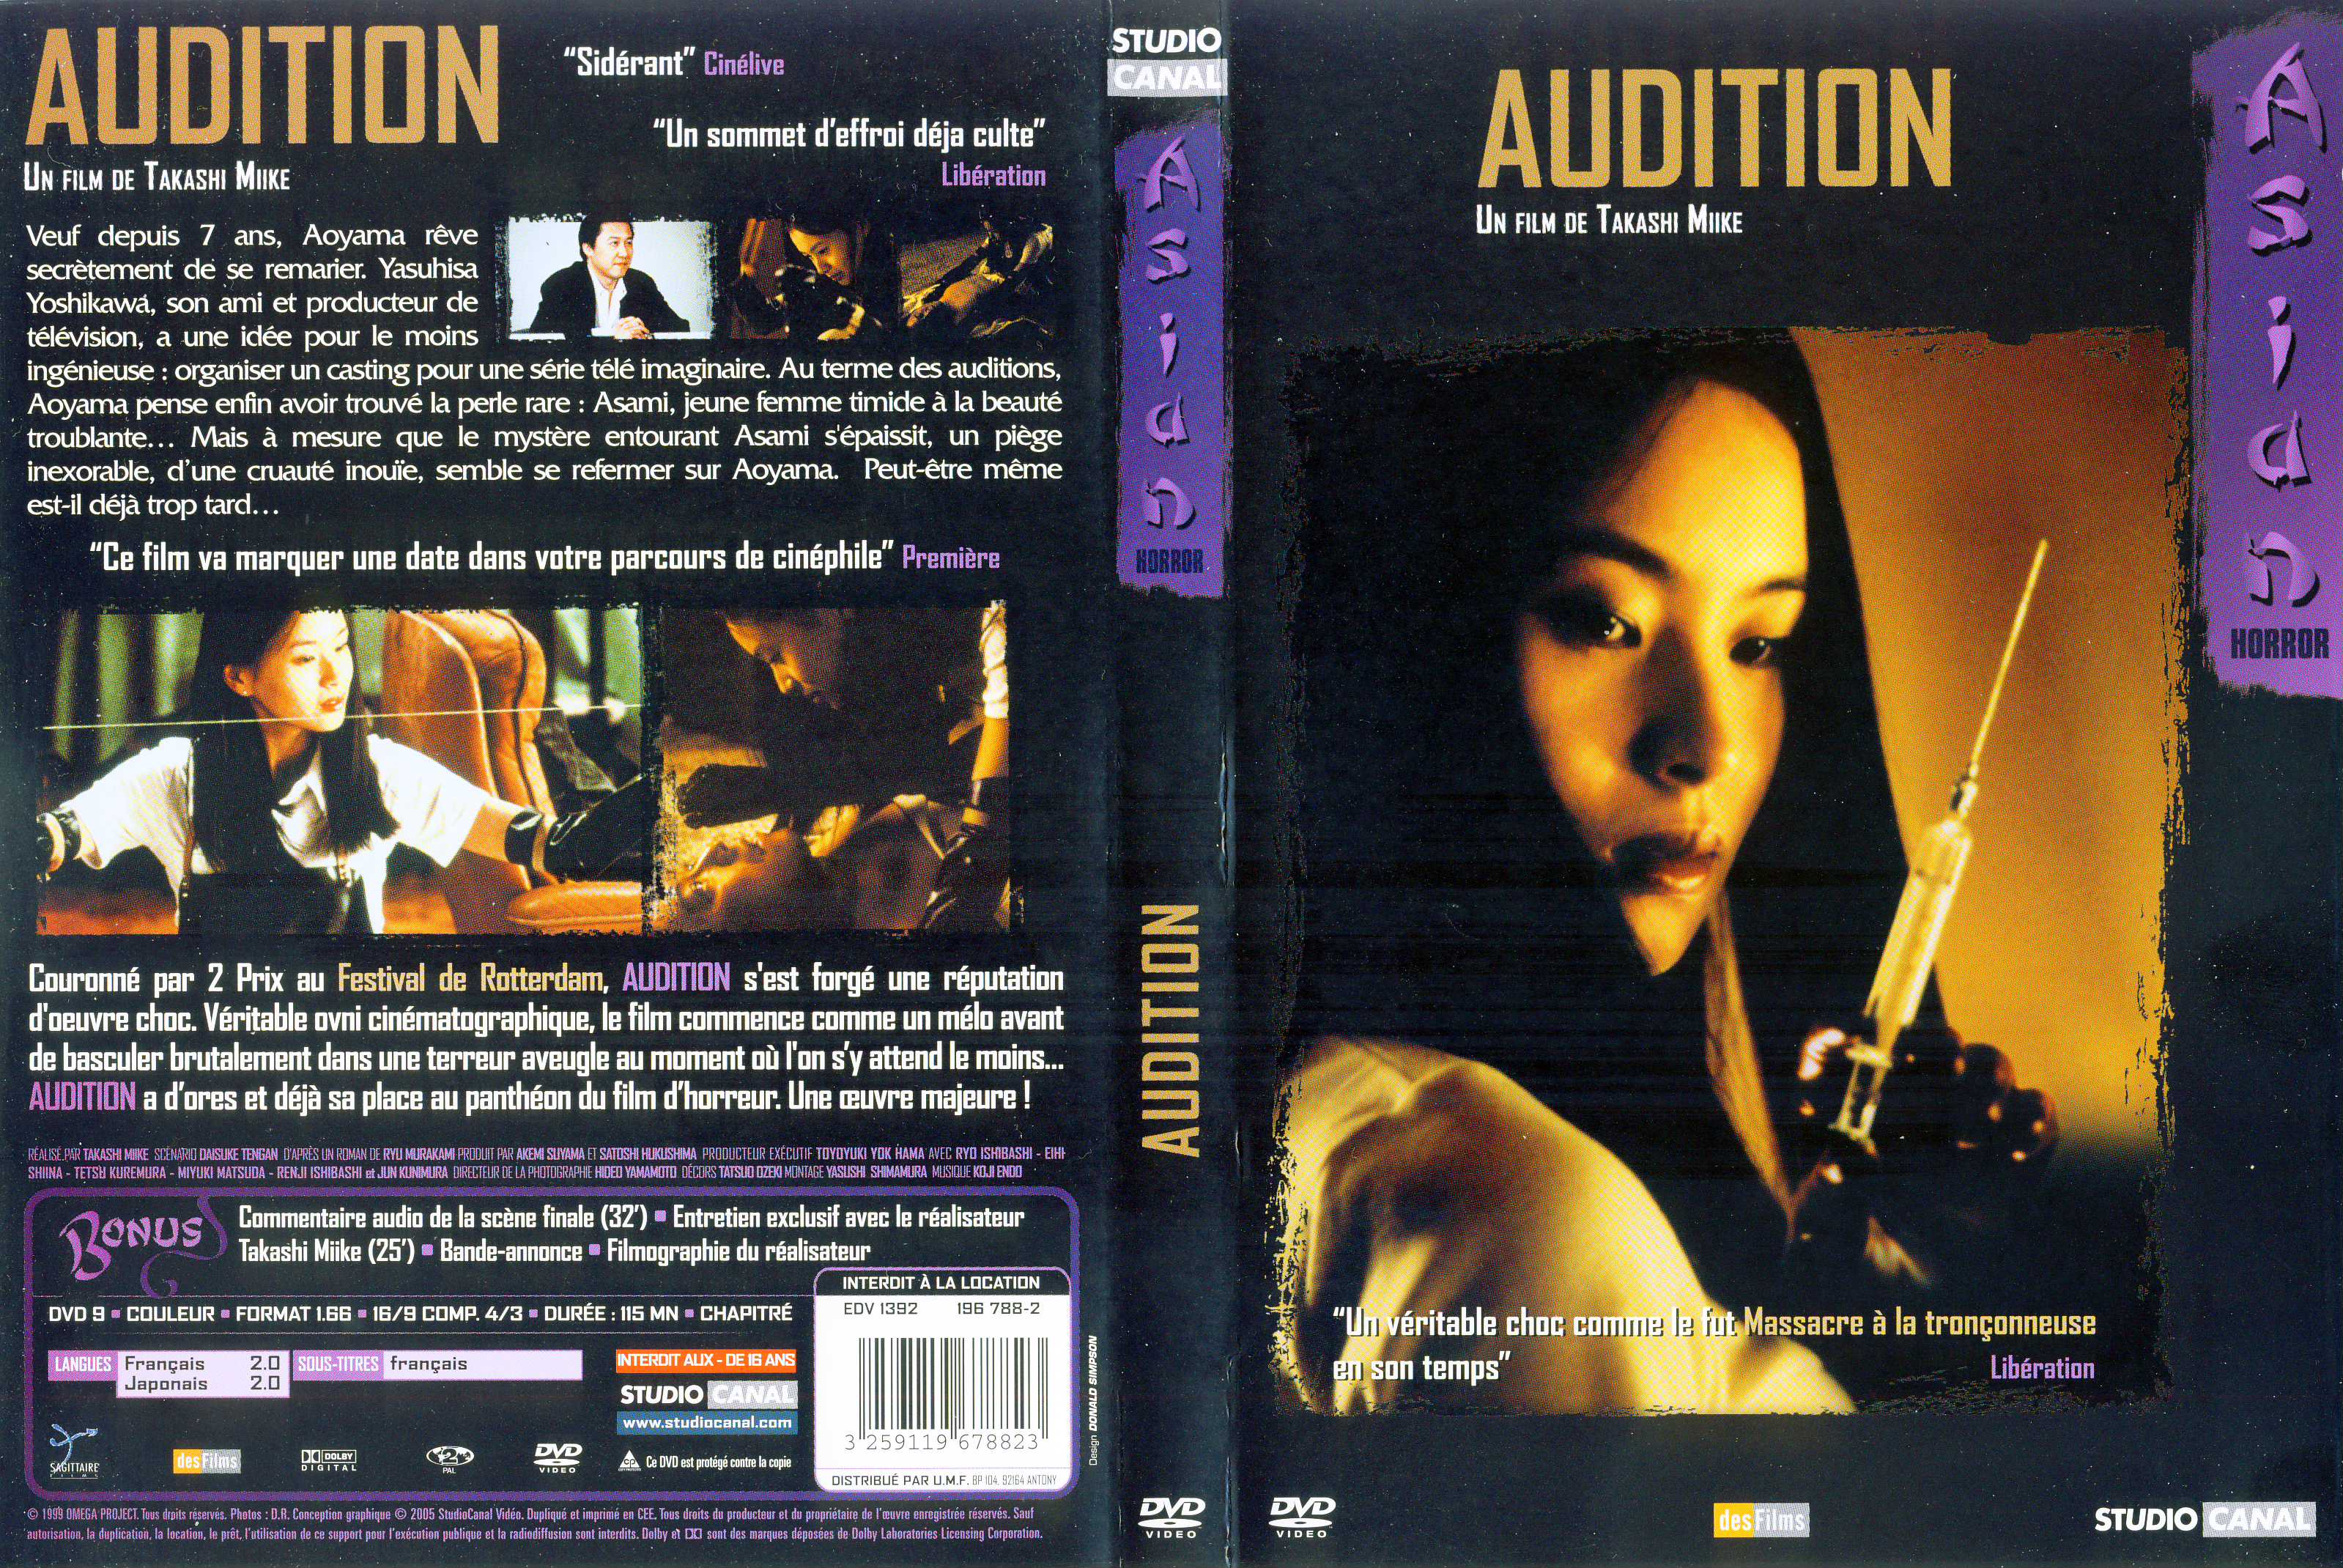 Jaquette DVD Audition v3